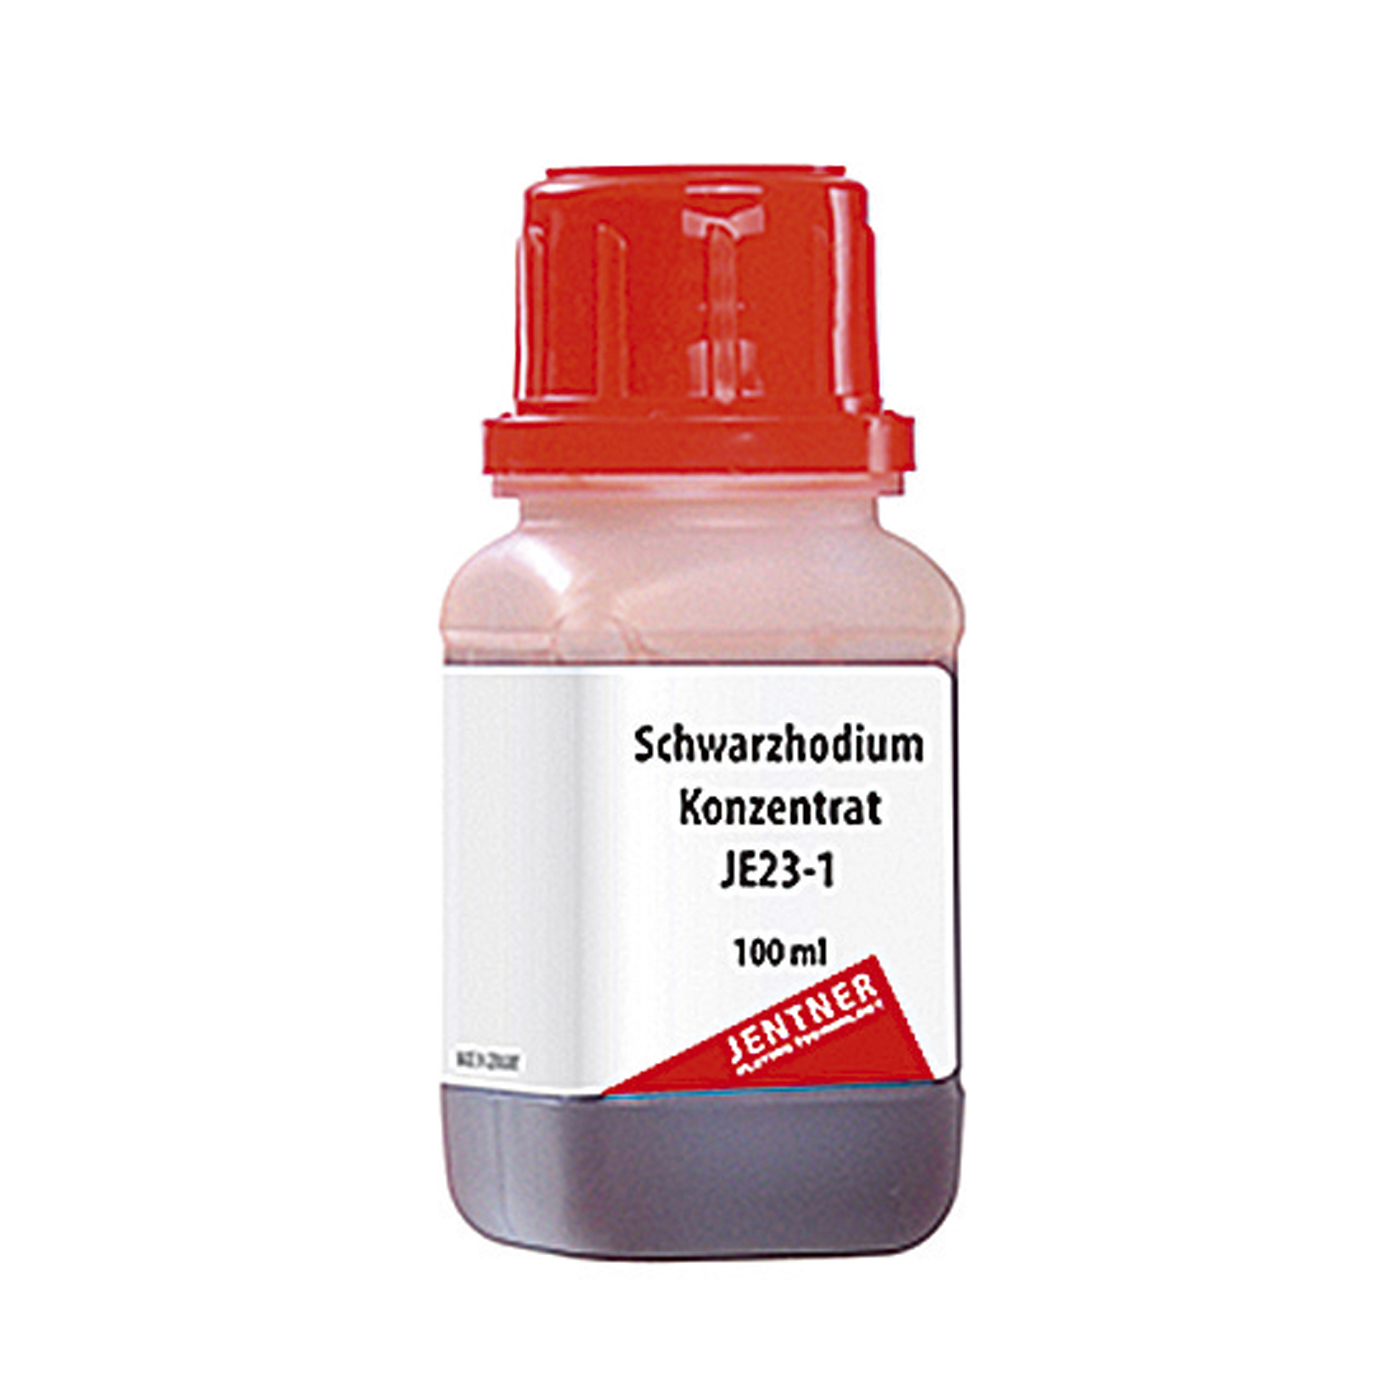 JE23-1 Schwarzrhodium-Konzentrat, 2g Rh, 100 g - 100 ml